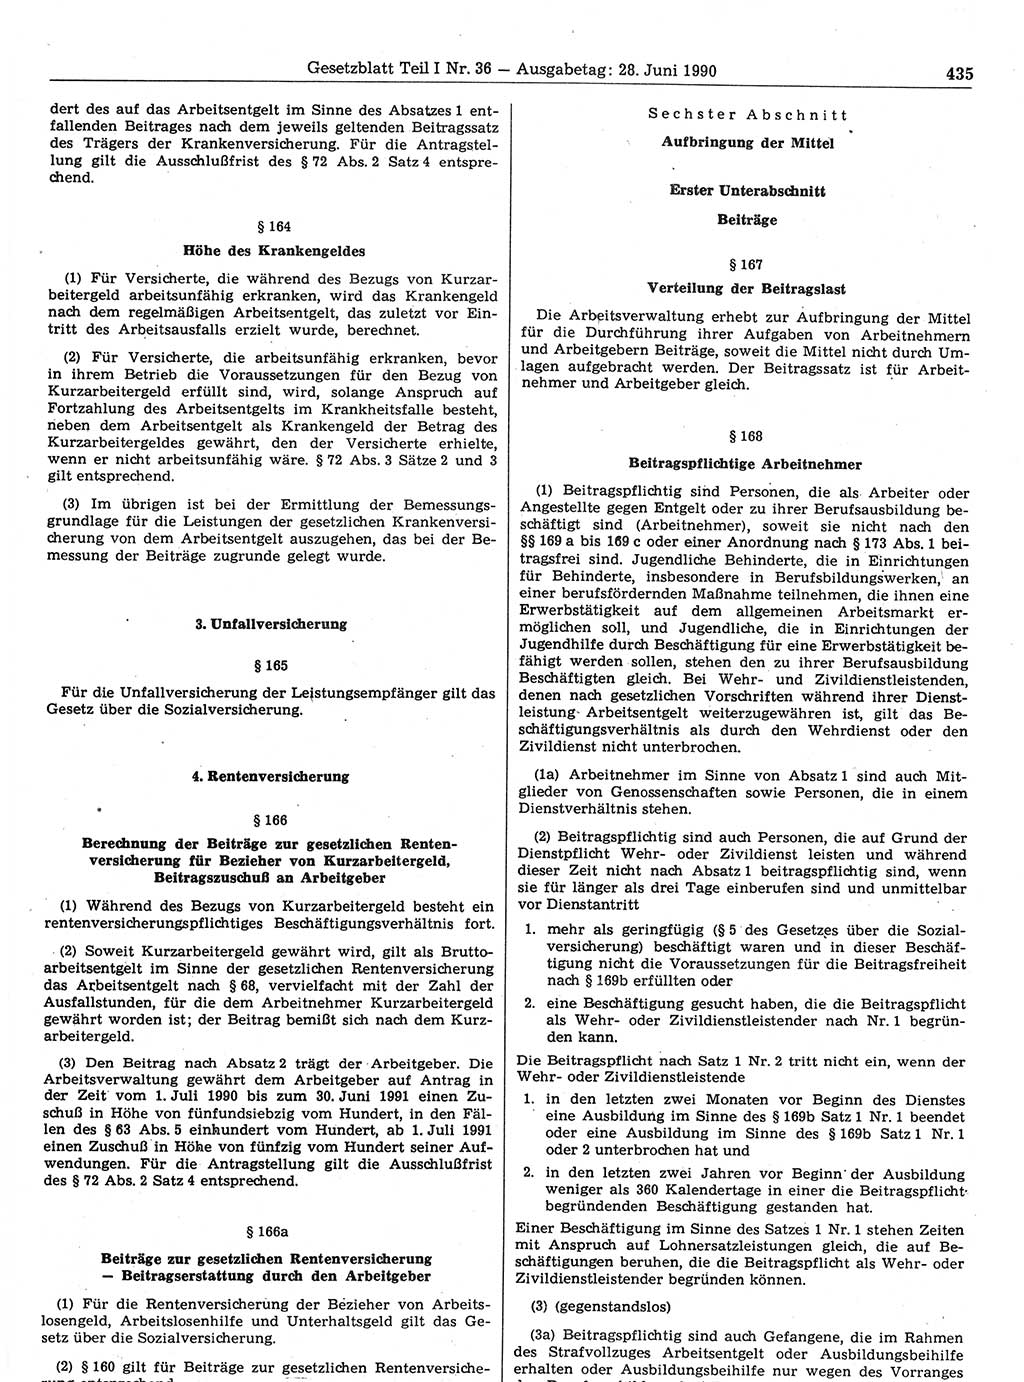 Gesetzblatt (GBl.) der Deutschen Demokratischen Republik (DDR) Teil Ⅰ 1990, Seite 435 (GBl. DDR Ⅰ 1990, S. 435)